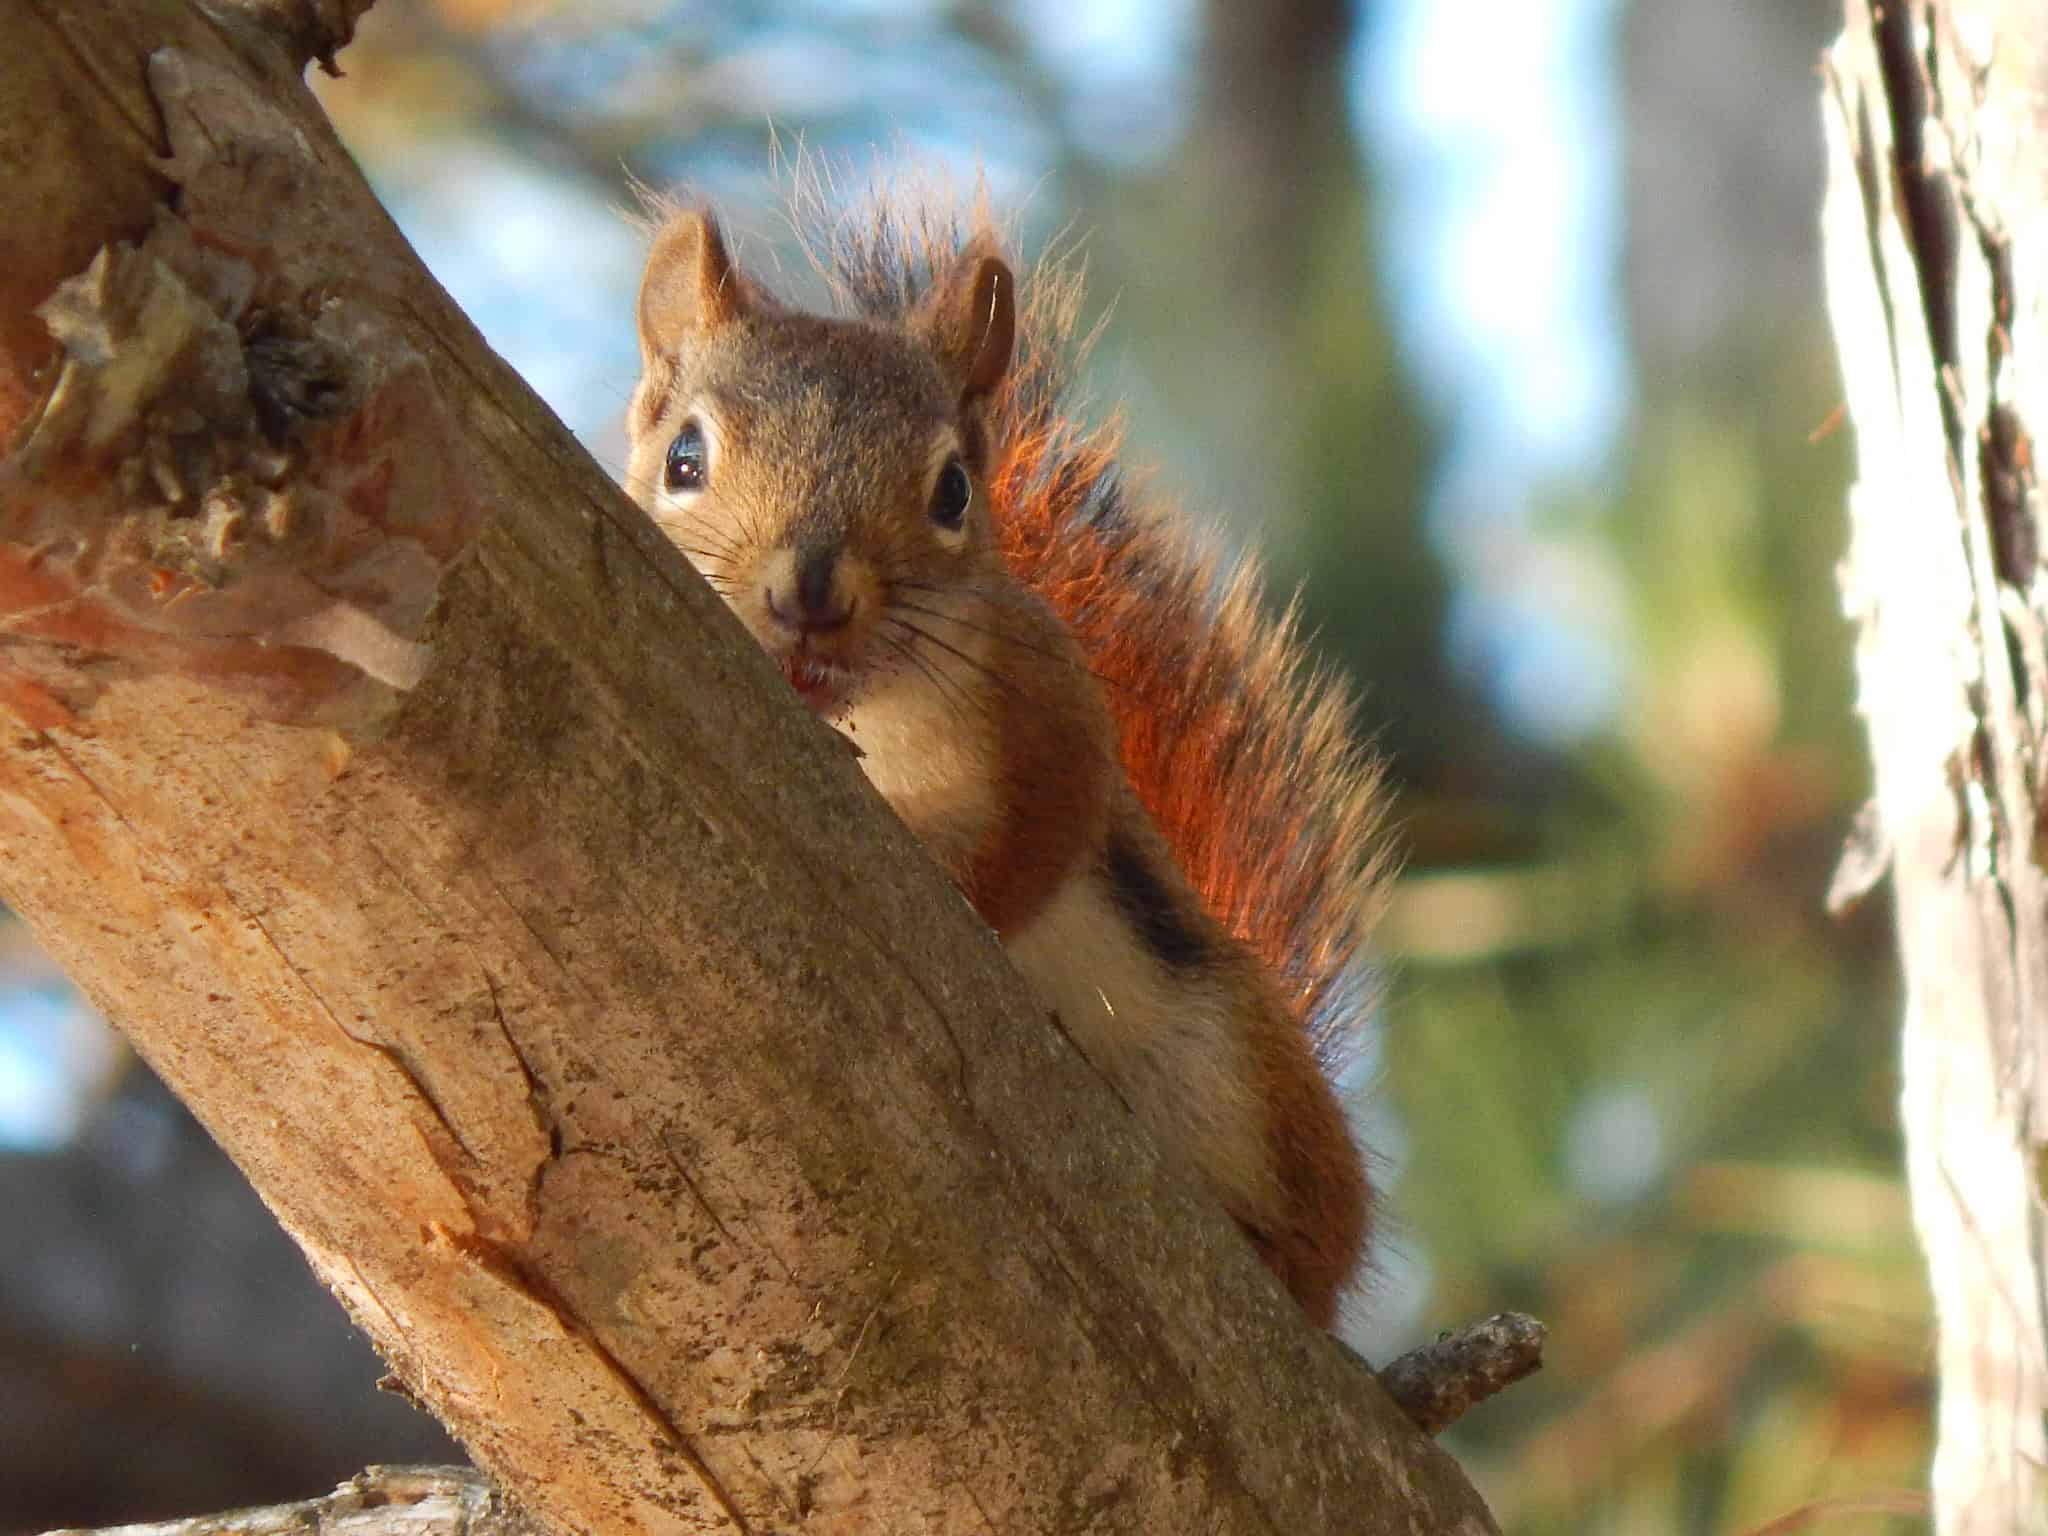 red squirrel on a tree trunk by seneynwr